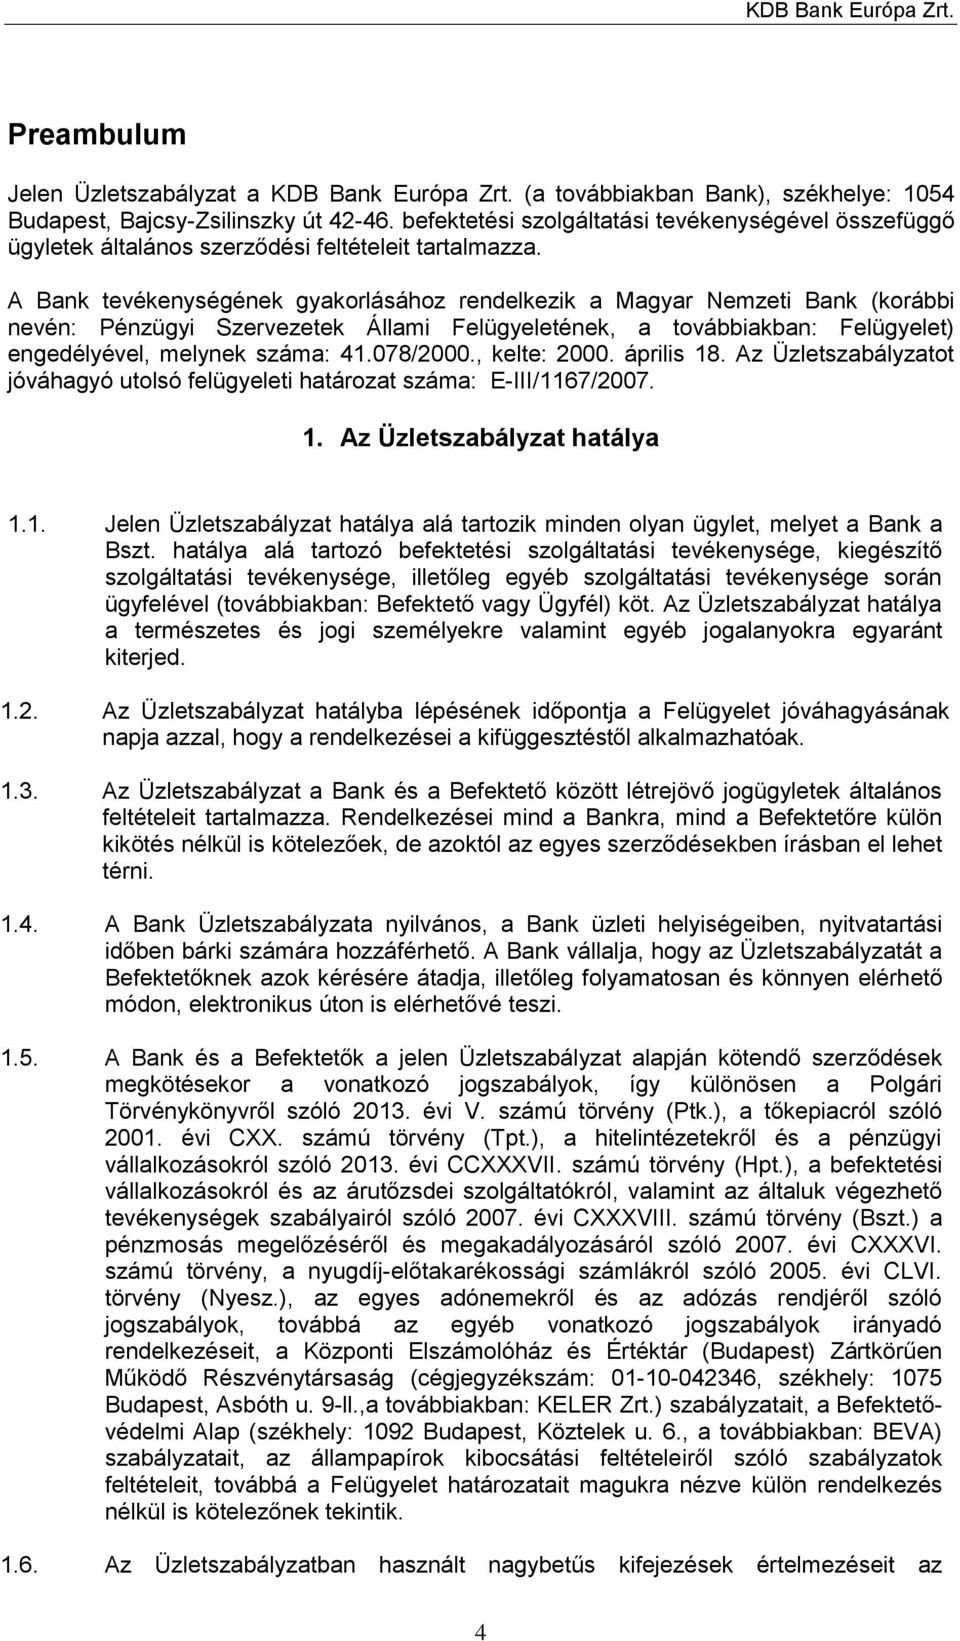 A Bank tevékenységének gyakorlásához rendelkezik a Magyar Nemzeti Bank (korábbi nevén: Pénzügyi Szervezetek Állami Felügyeletének, a továbbiakban: Felügyelet) engedélyével, melynek száma: 41.078/2000.